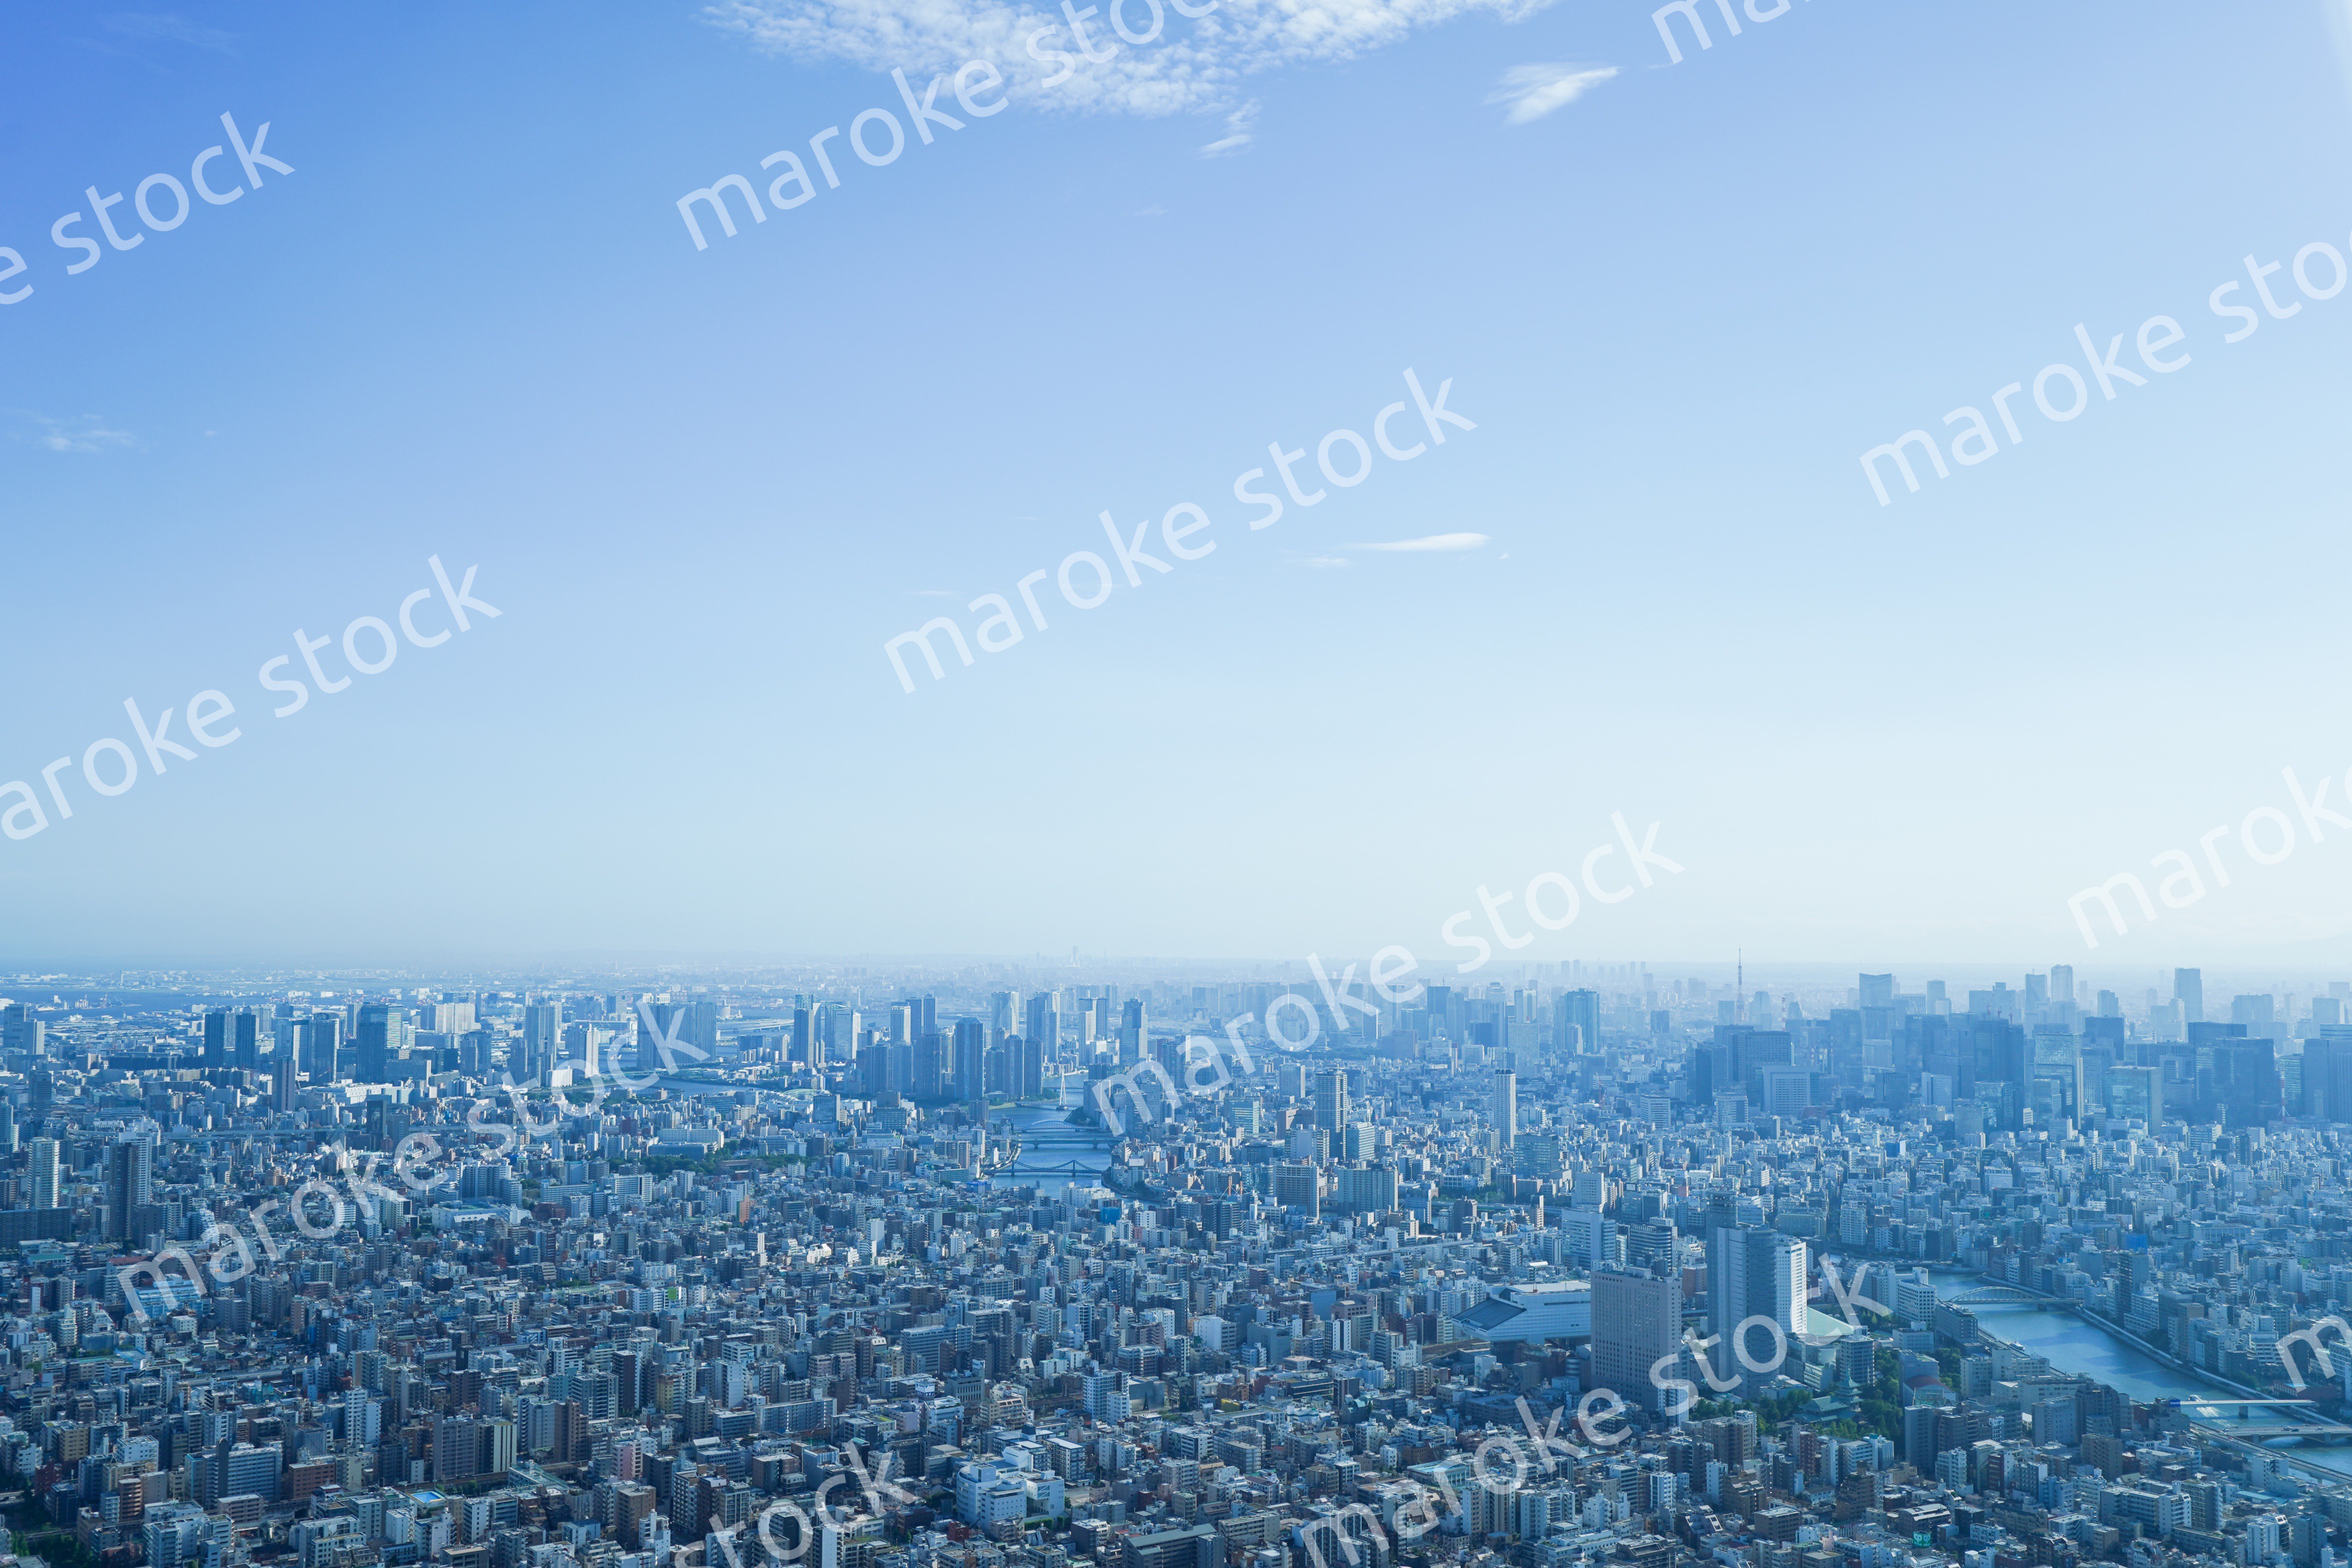 東京の風景 高層ビル群 Maroke Stock 写真素材をフォトグラファーから直接購入できるストックフォトサイト